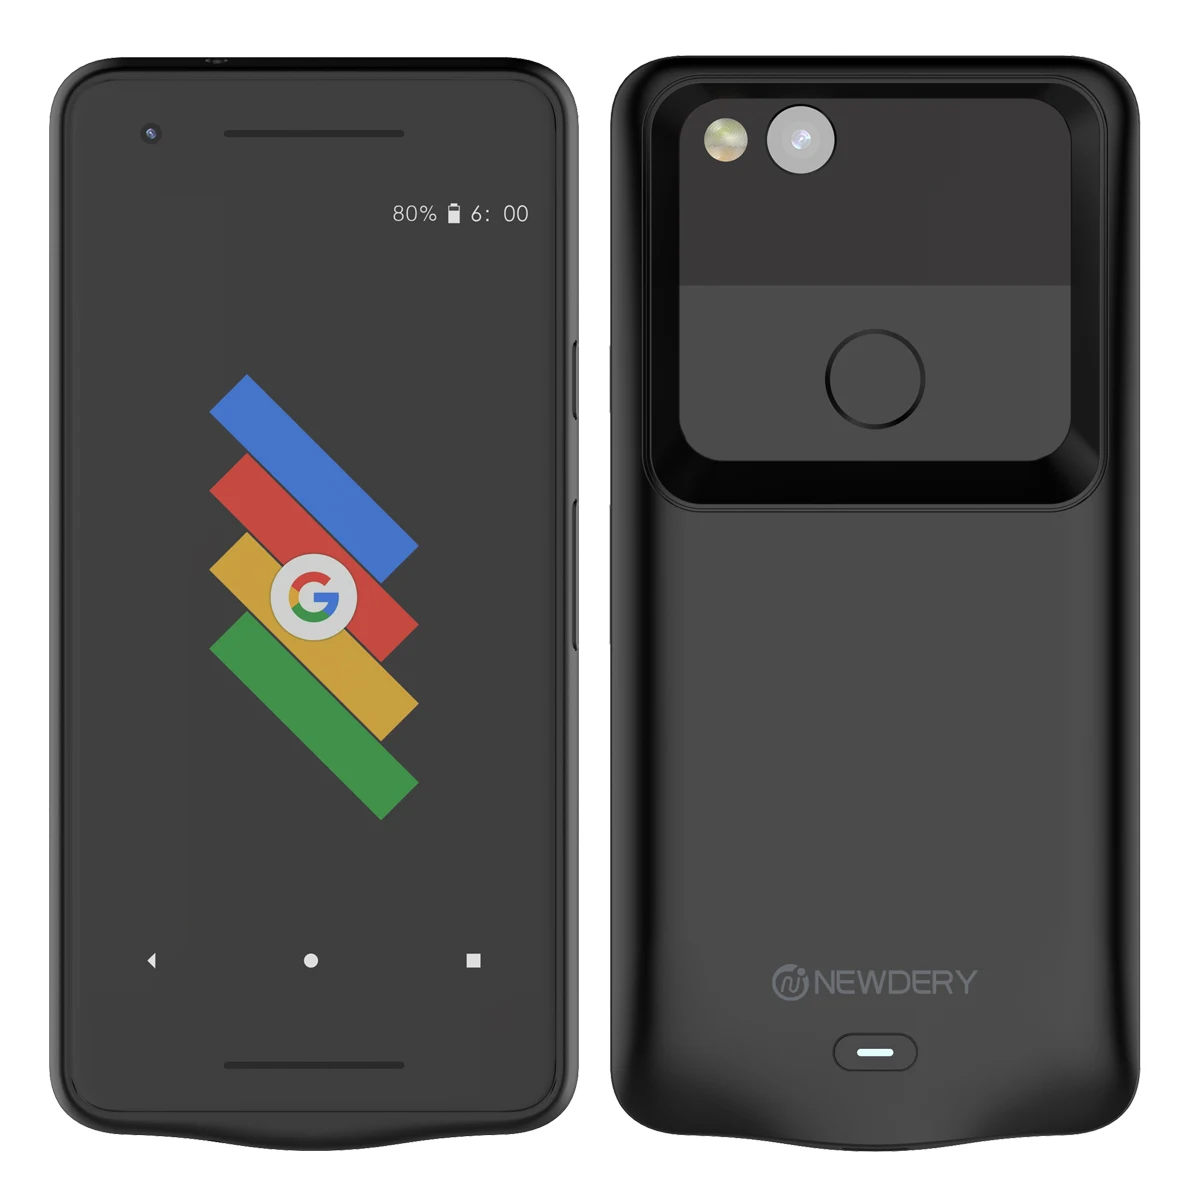 Чехол WIN 5200 мАч, чехол для зарядного устройства для Google Pixel 2 XL, чехол, внешний аккумулятор, чехол для зарядки, ультра тонкий внешний аккумулятор, чехол для зарядного устройства - Цвет: Black